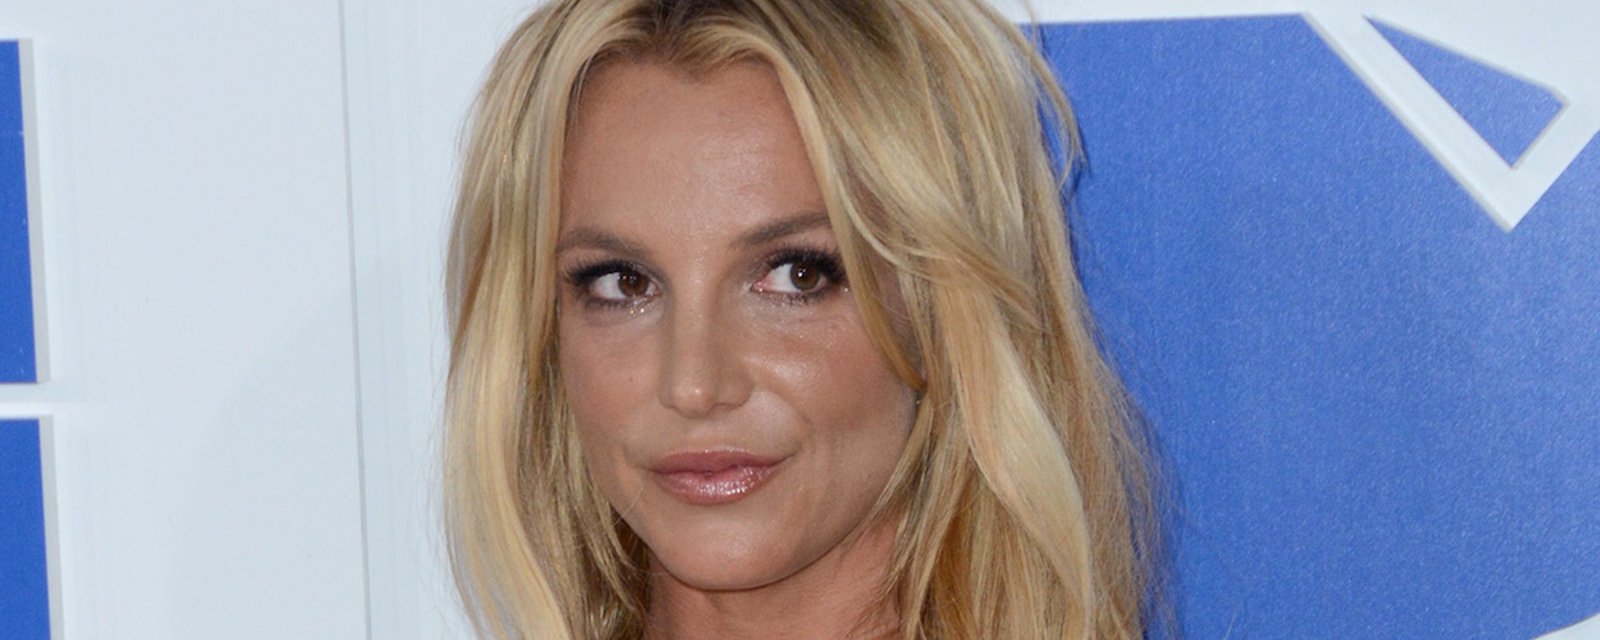 De GRAVES rumeurs courent sur Britney Spears